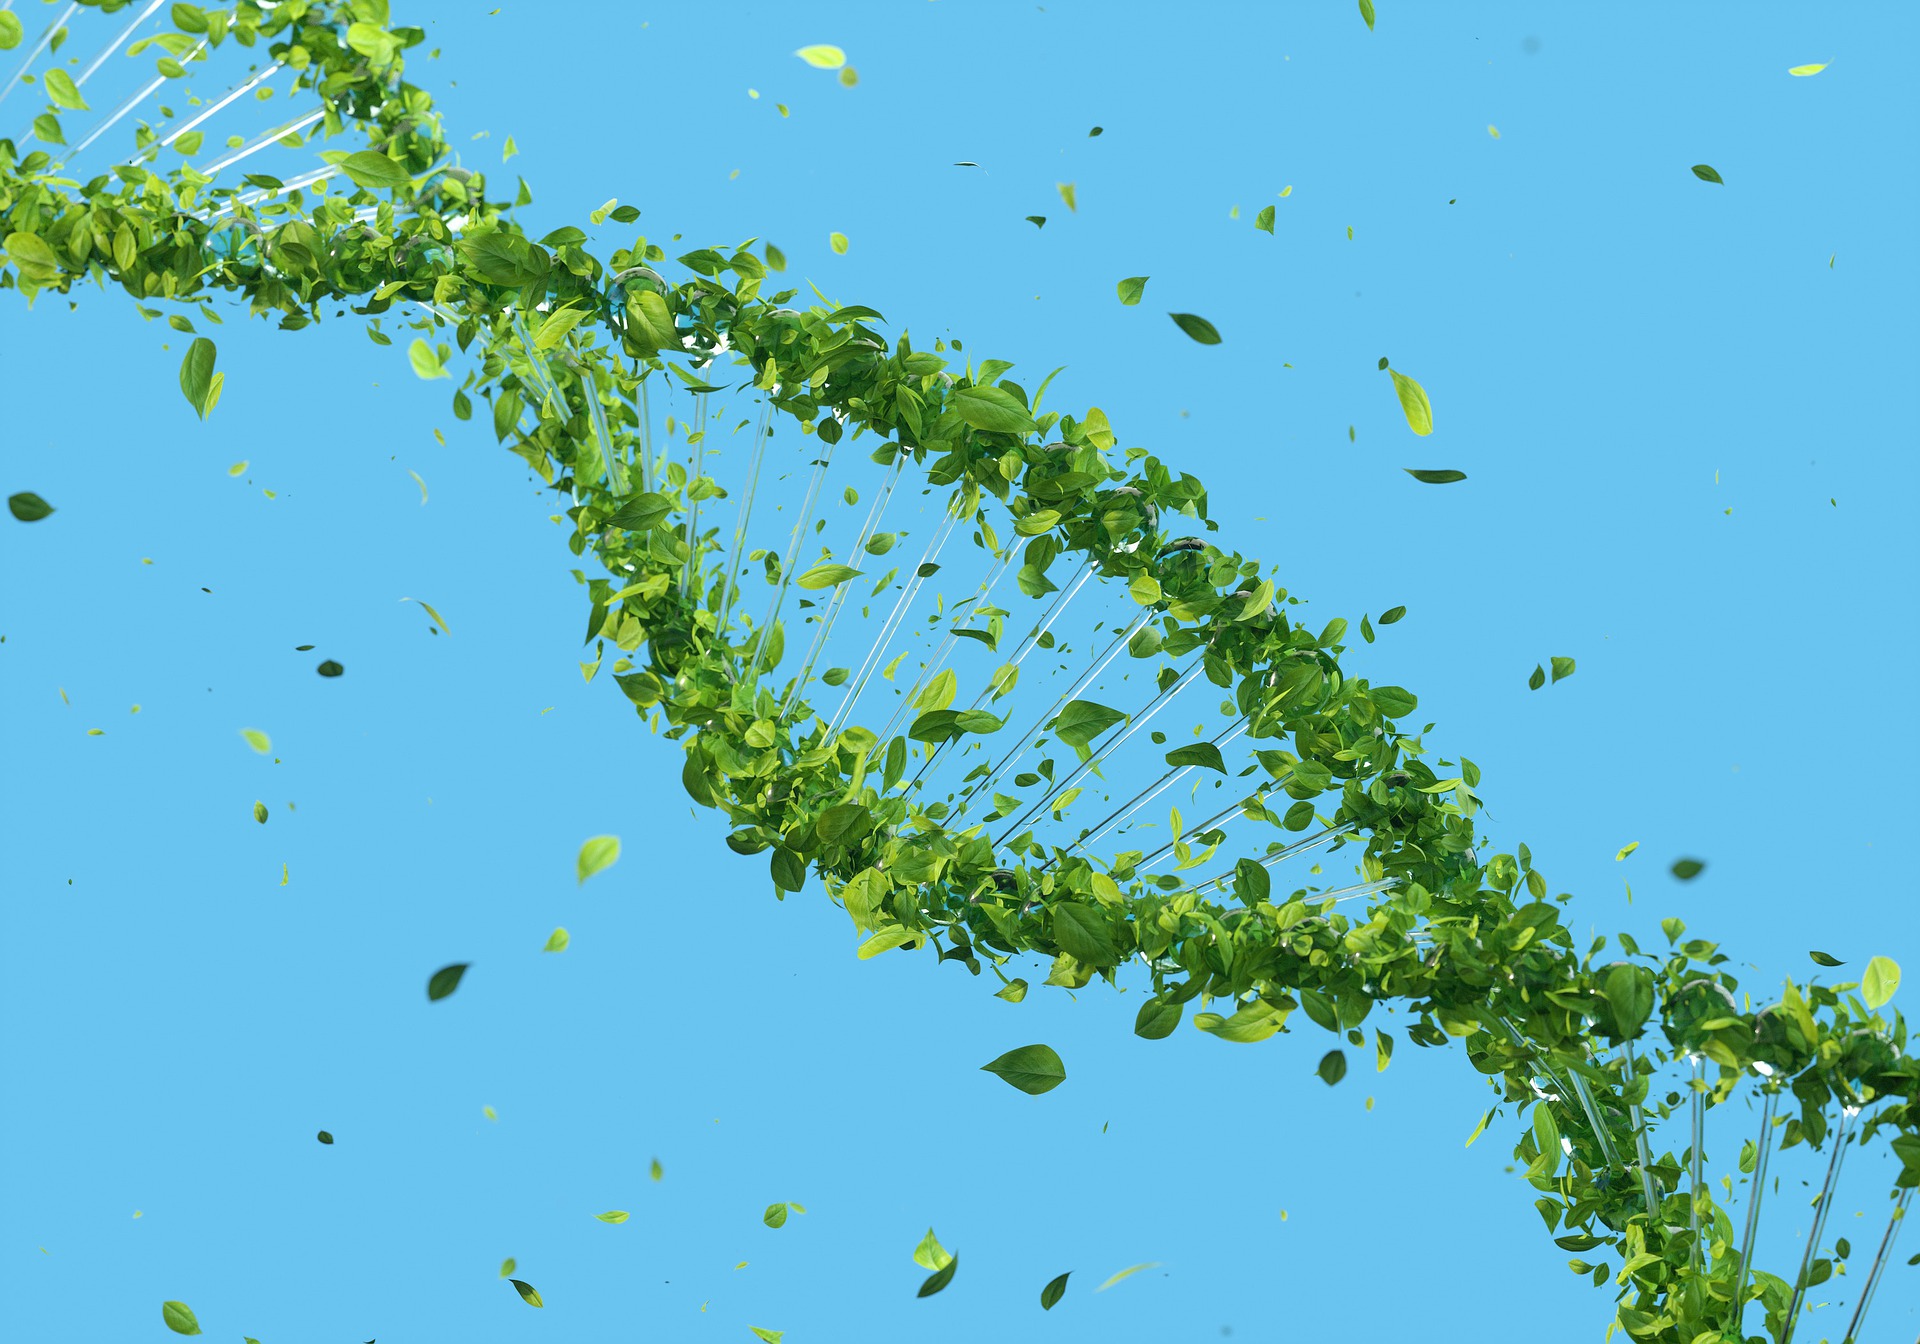 DNA repairing with epigenetics